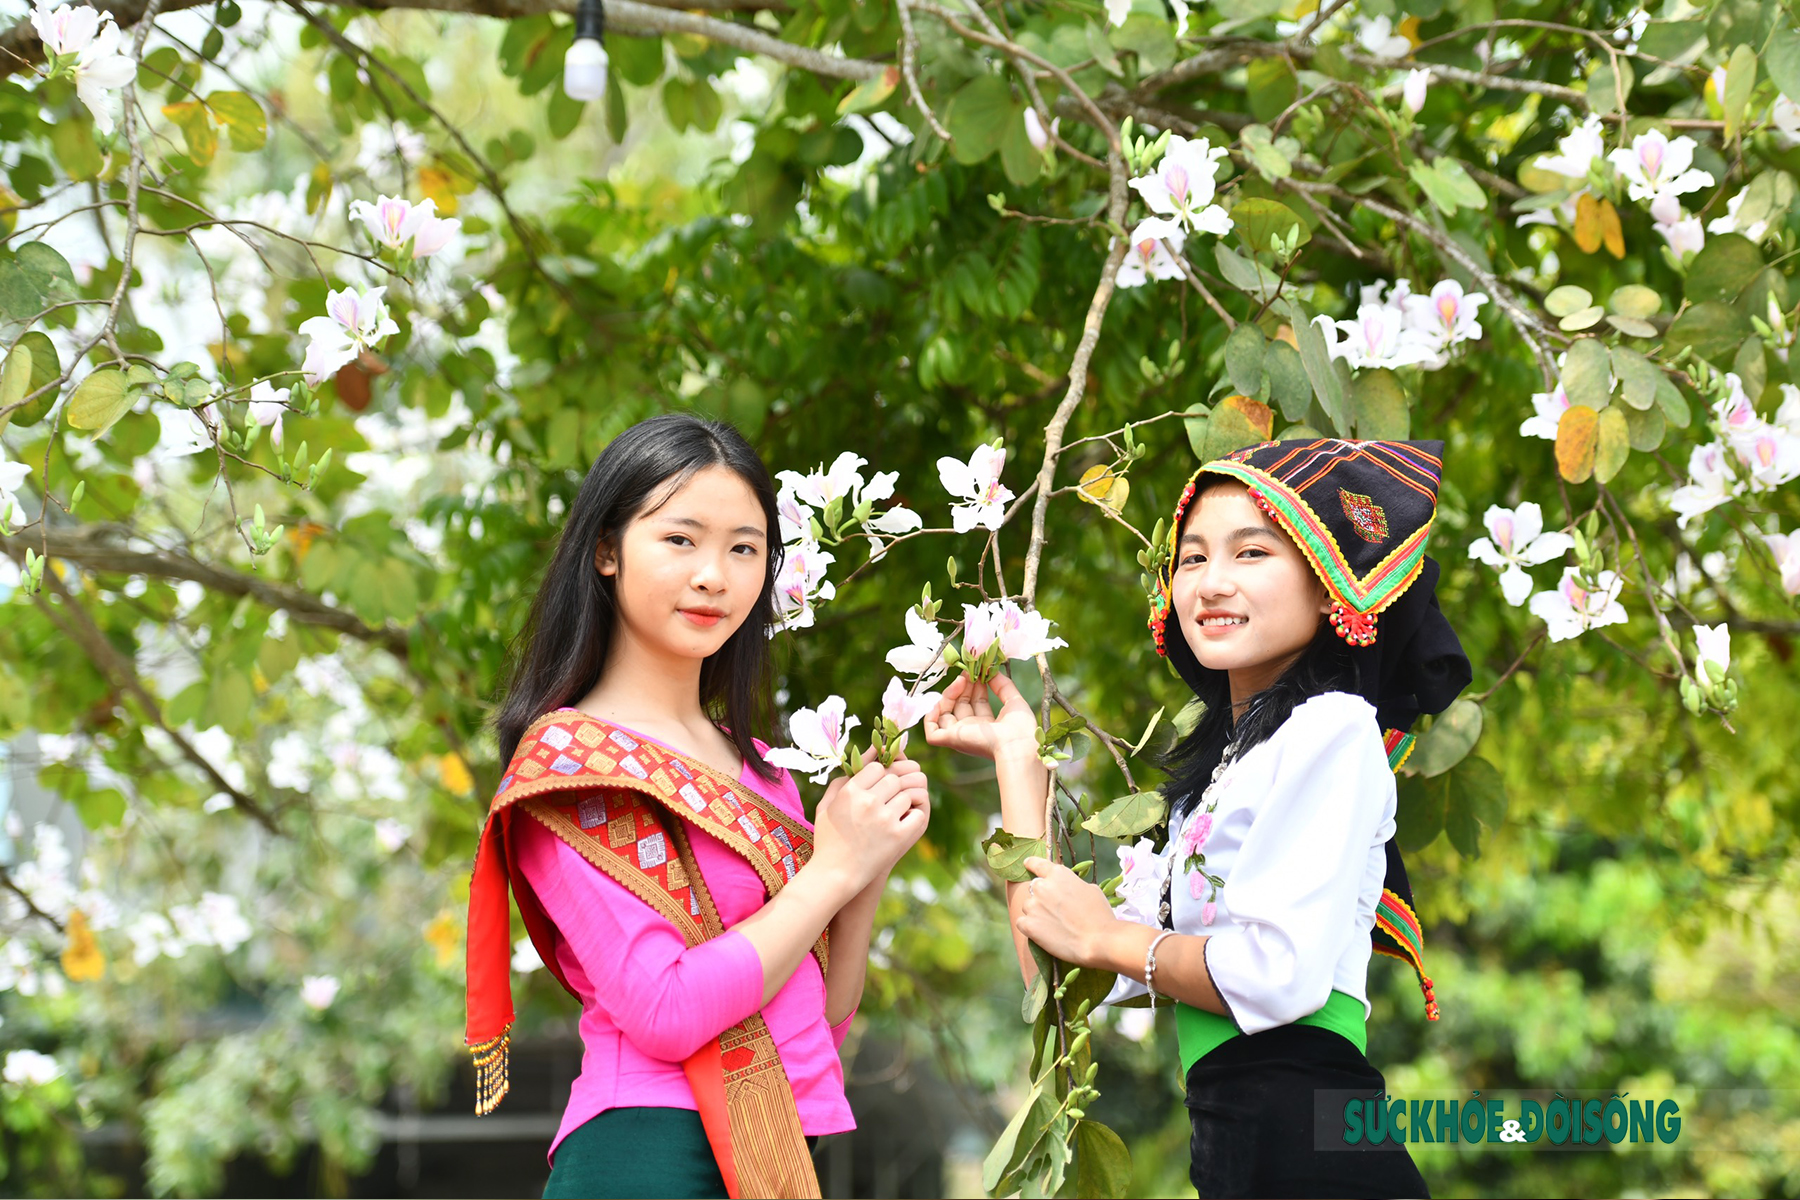 Thiếu nữ Thái ở Điện Biên dịu dàng giữa rừng hoa ban tuyệt đẹp - Ảnh 7.